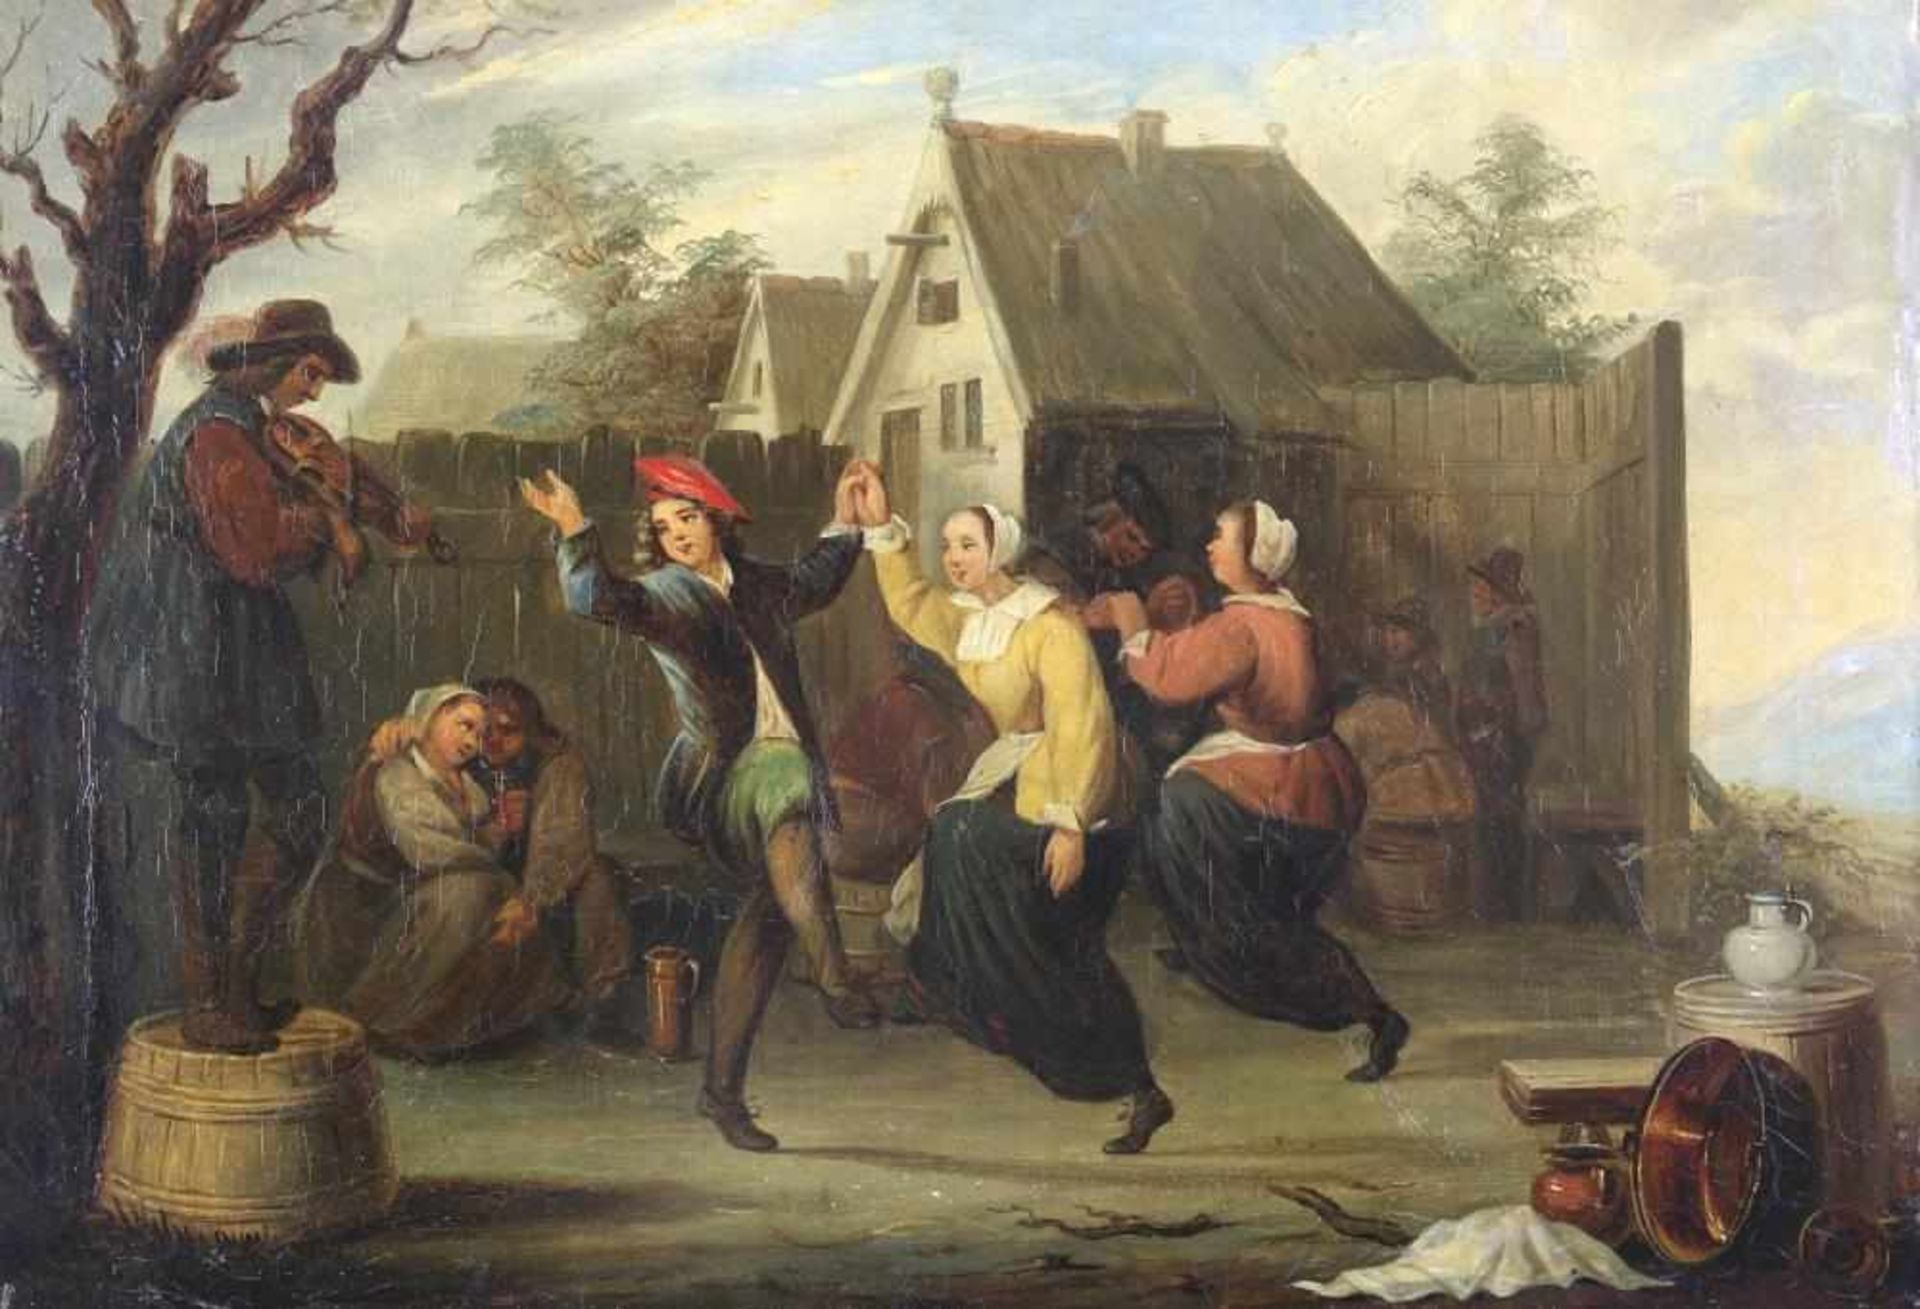 Teniers, David II 1610-1690 Nachfolger. Oder Umkreis. Typisch flämisches Tanzvergnügen vor der